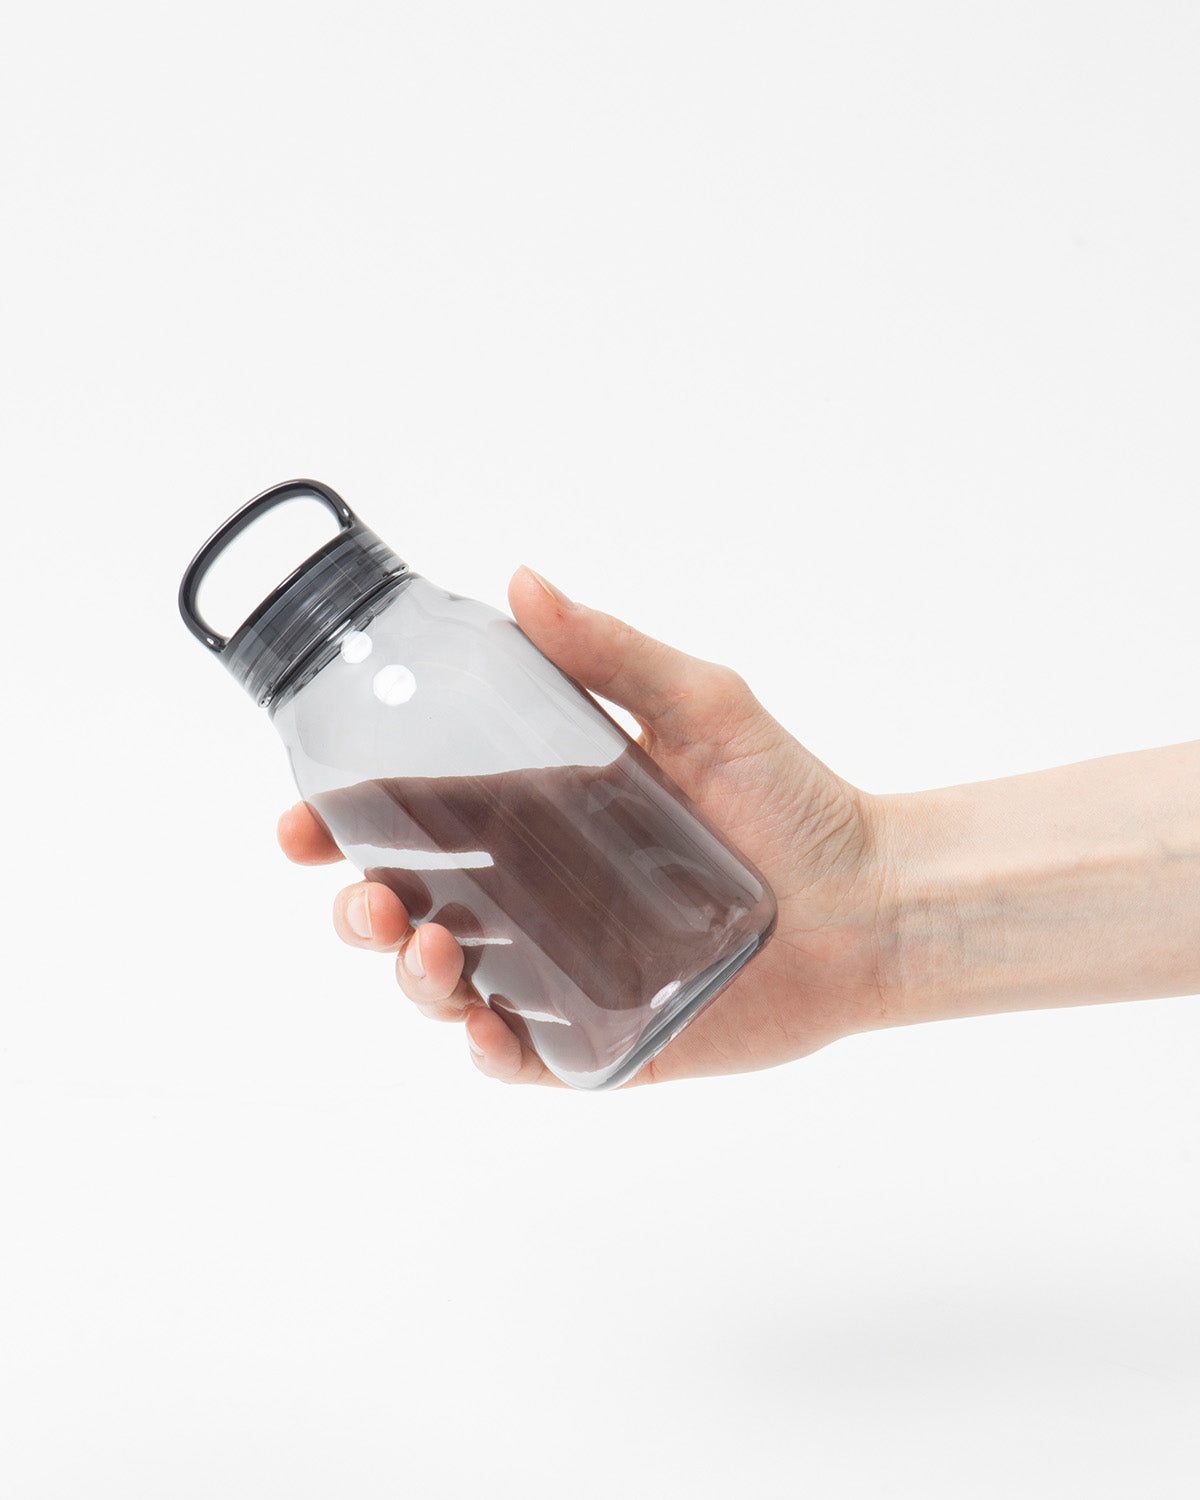 Kinto Water Bottle 500ml Clear